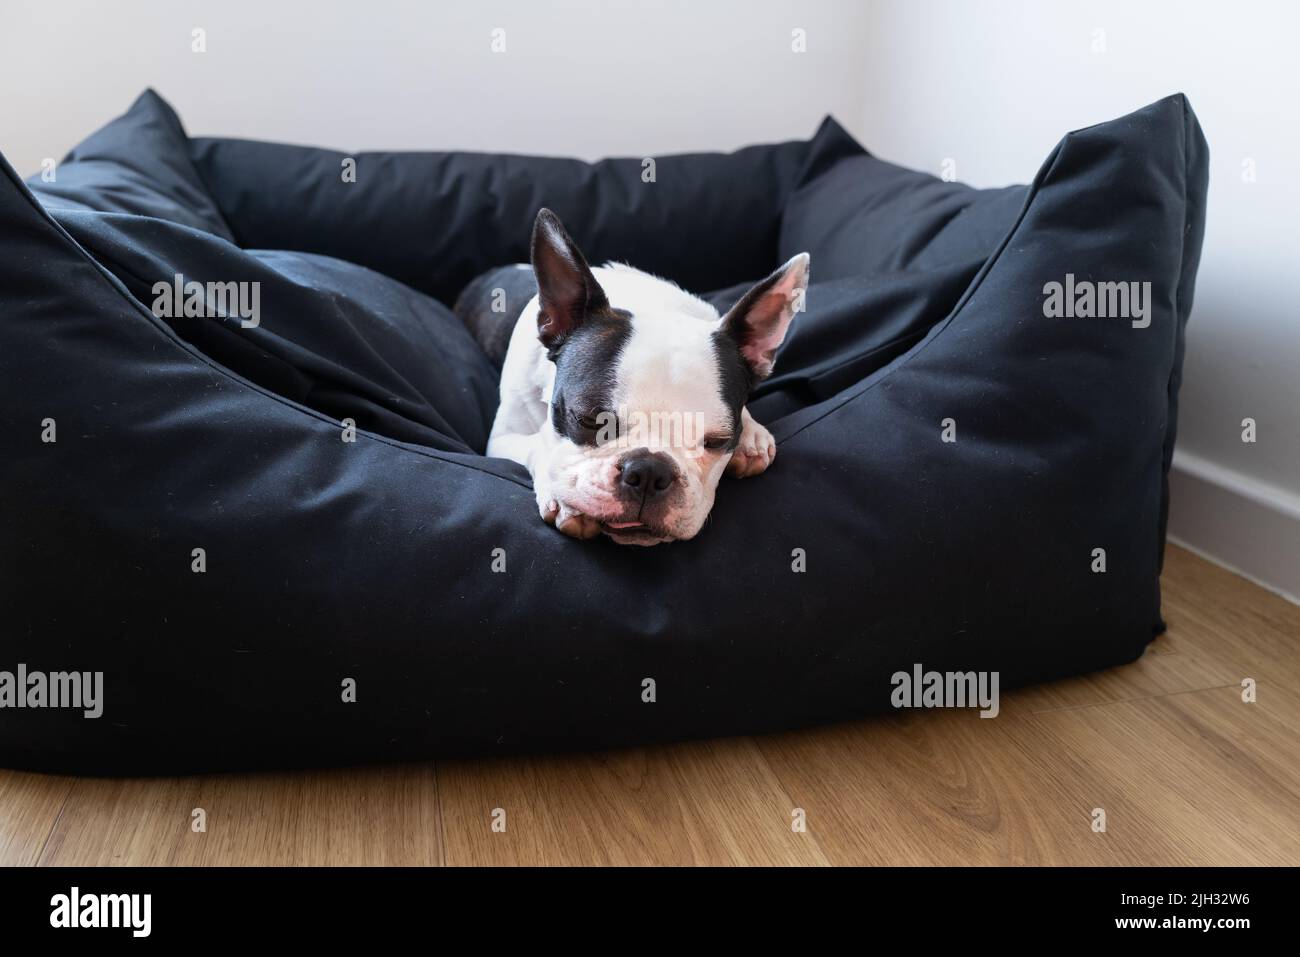 Boston Terrier Hund liegt in einem großen schwarzen bequemen Bett. Sie hat ihre Zunge leicht nach außen, während sie ruht. Stockfoto